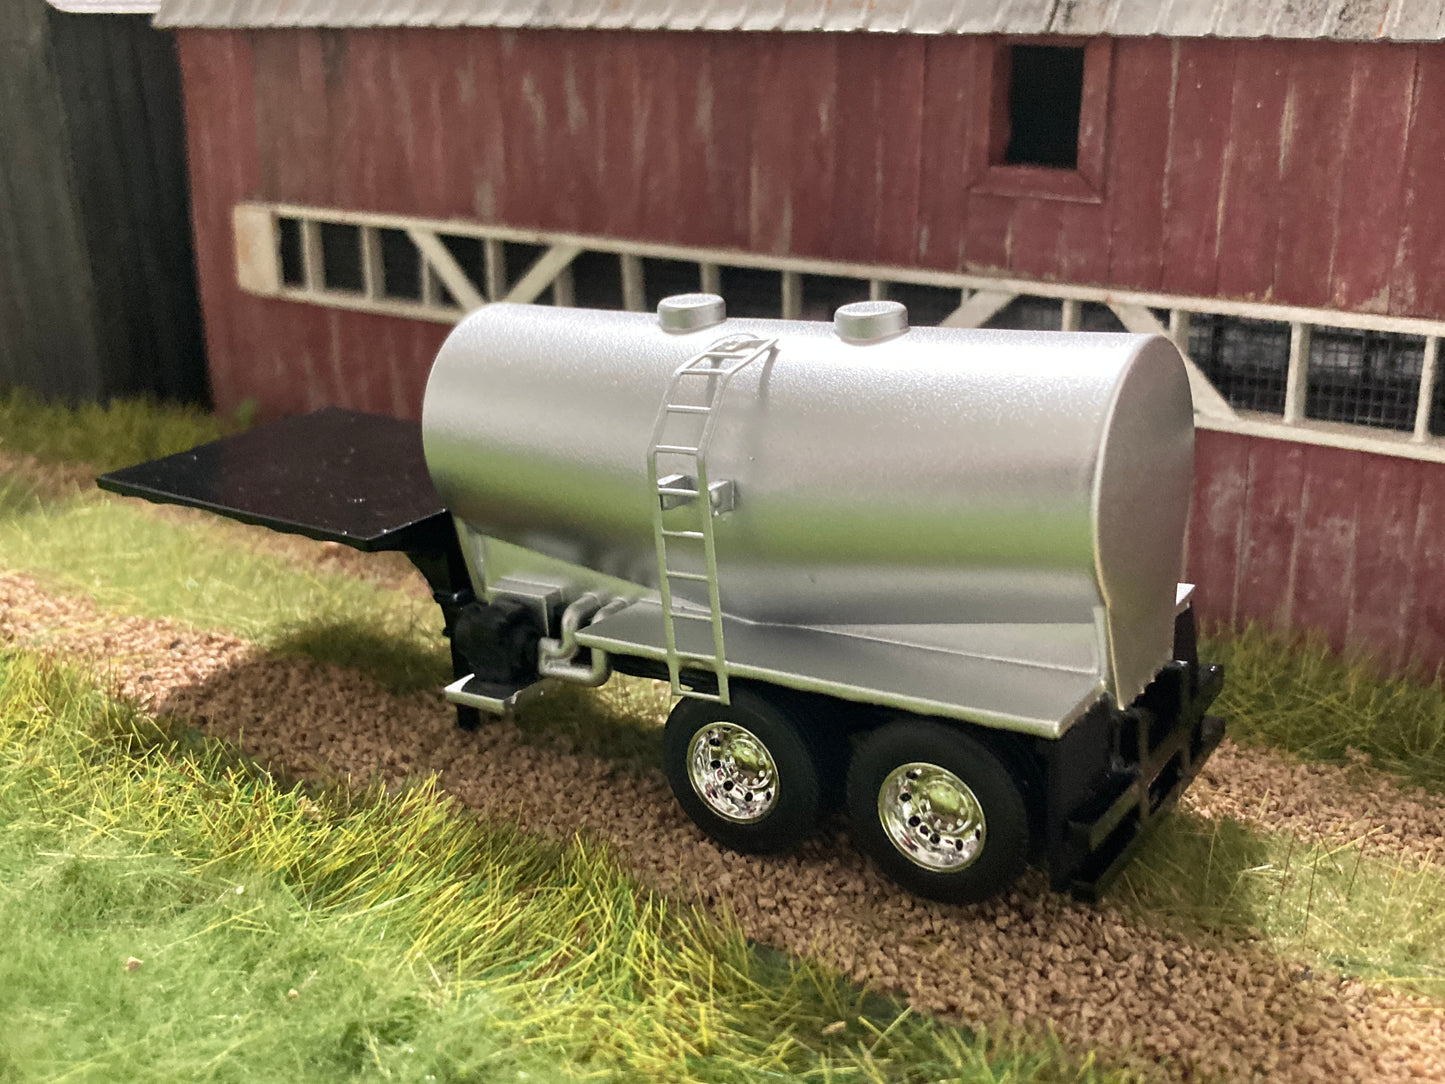 1/64 Liquid Fertilizer Tender Trailer 3,250 gallons